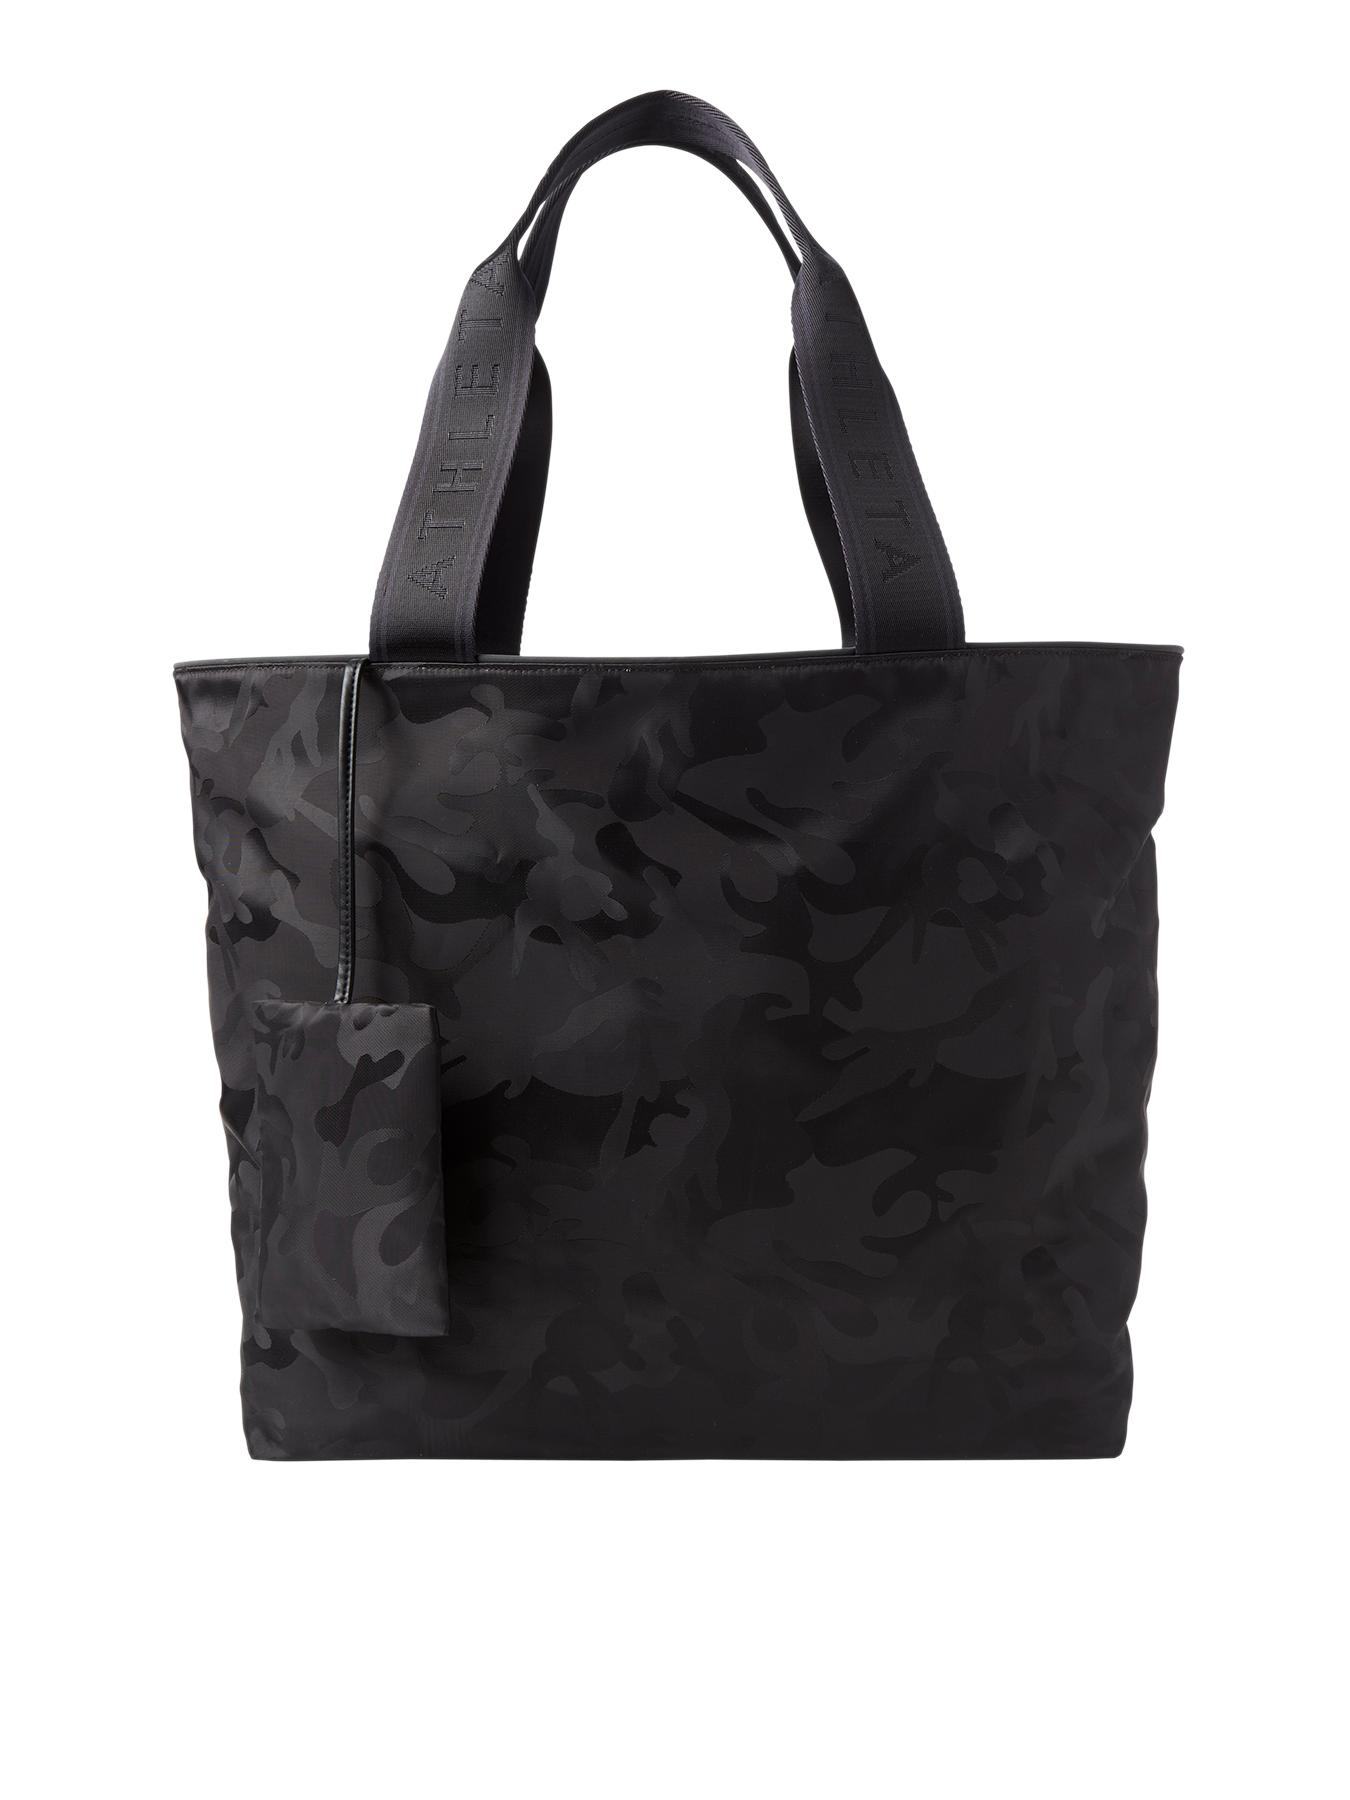 Camo Tote Bag by Bodega Negra